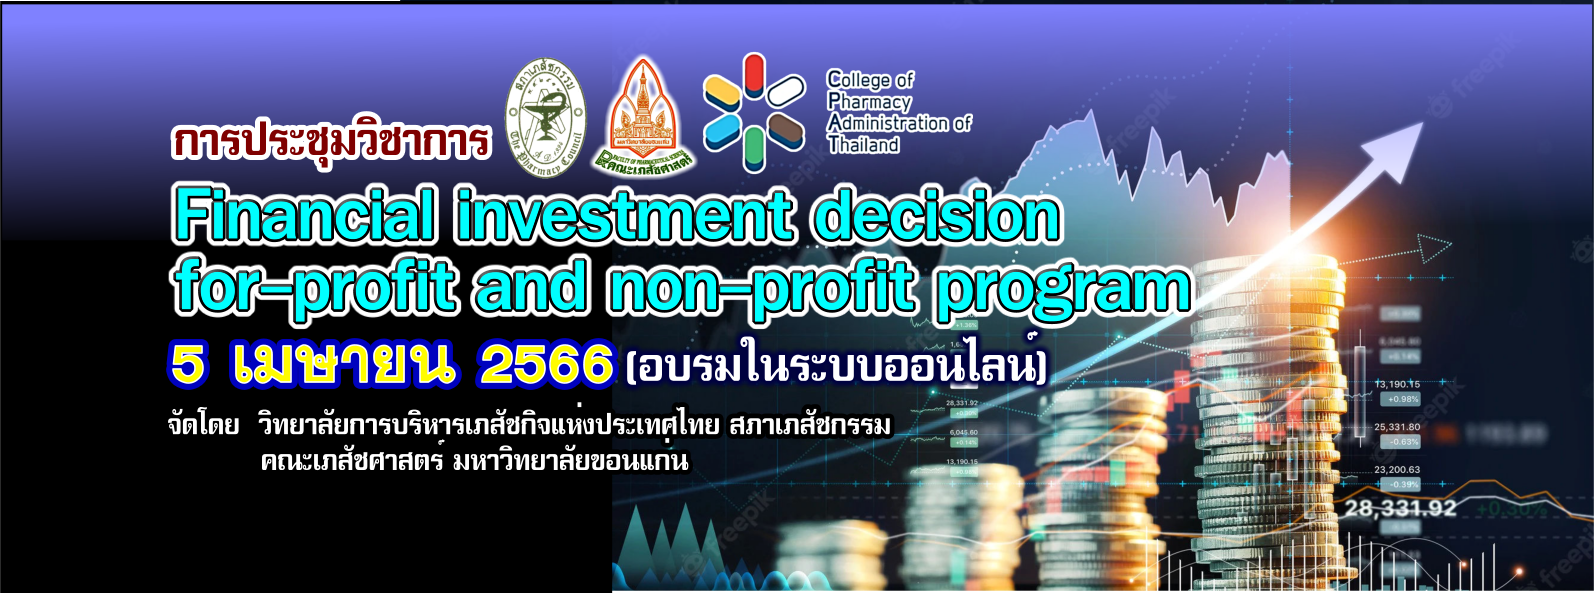 การประชุมวิชาการ ครั้งที่ 24 เรื่อง Financial investment decision for-profit and non-profit program